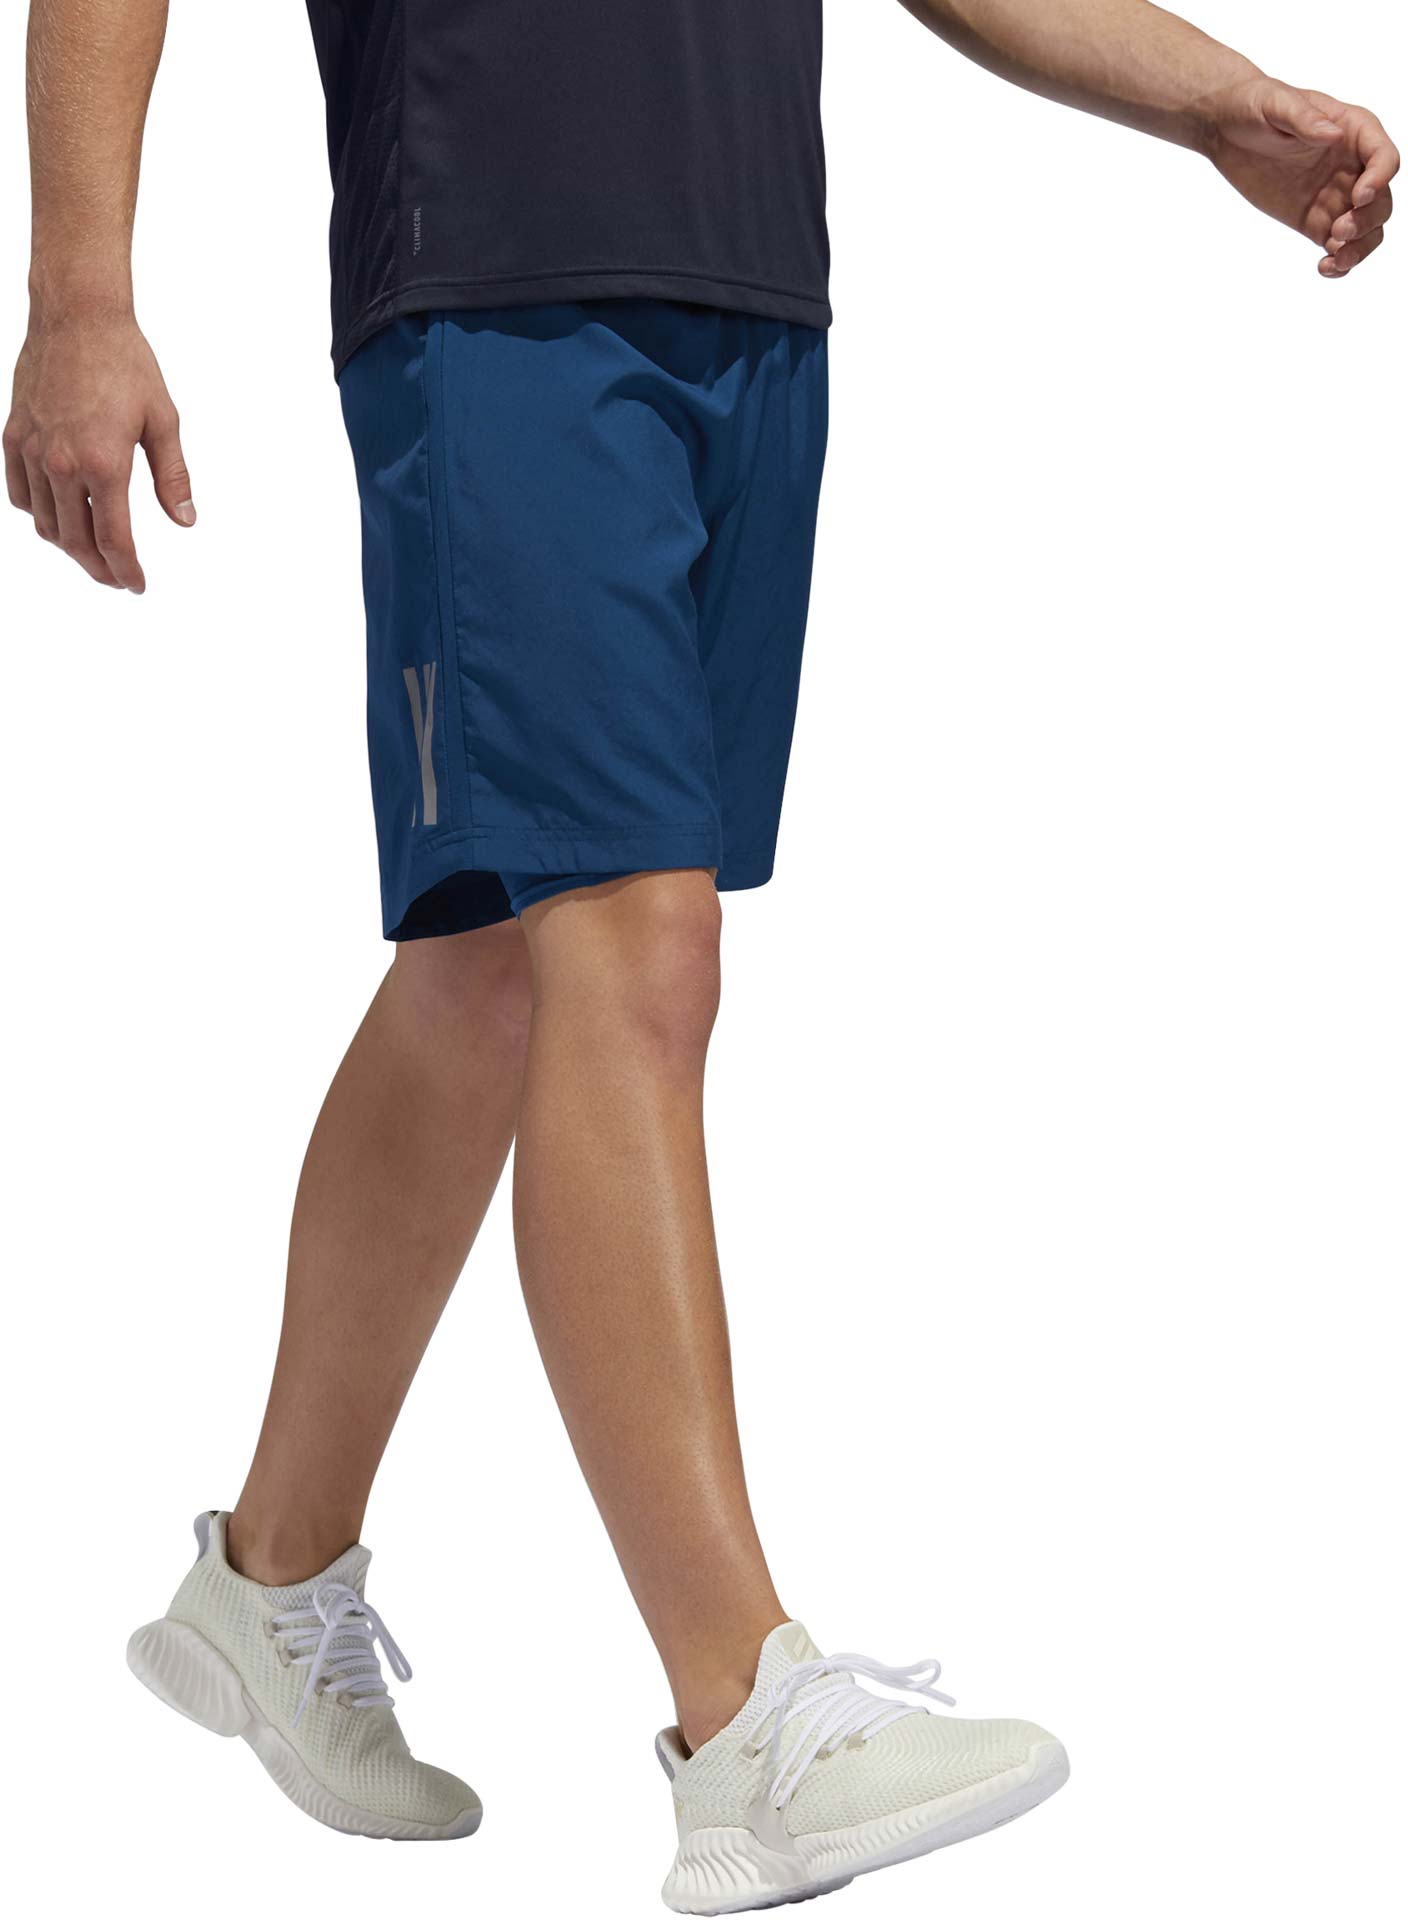 Men’s running shorts